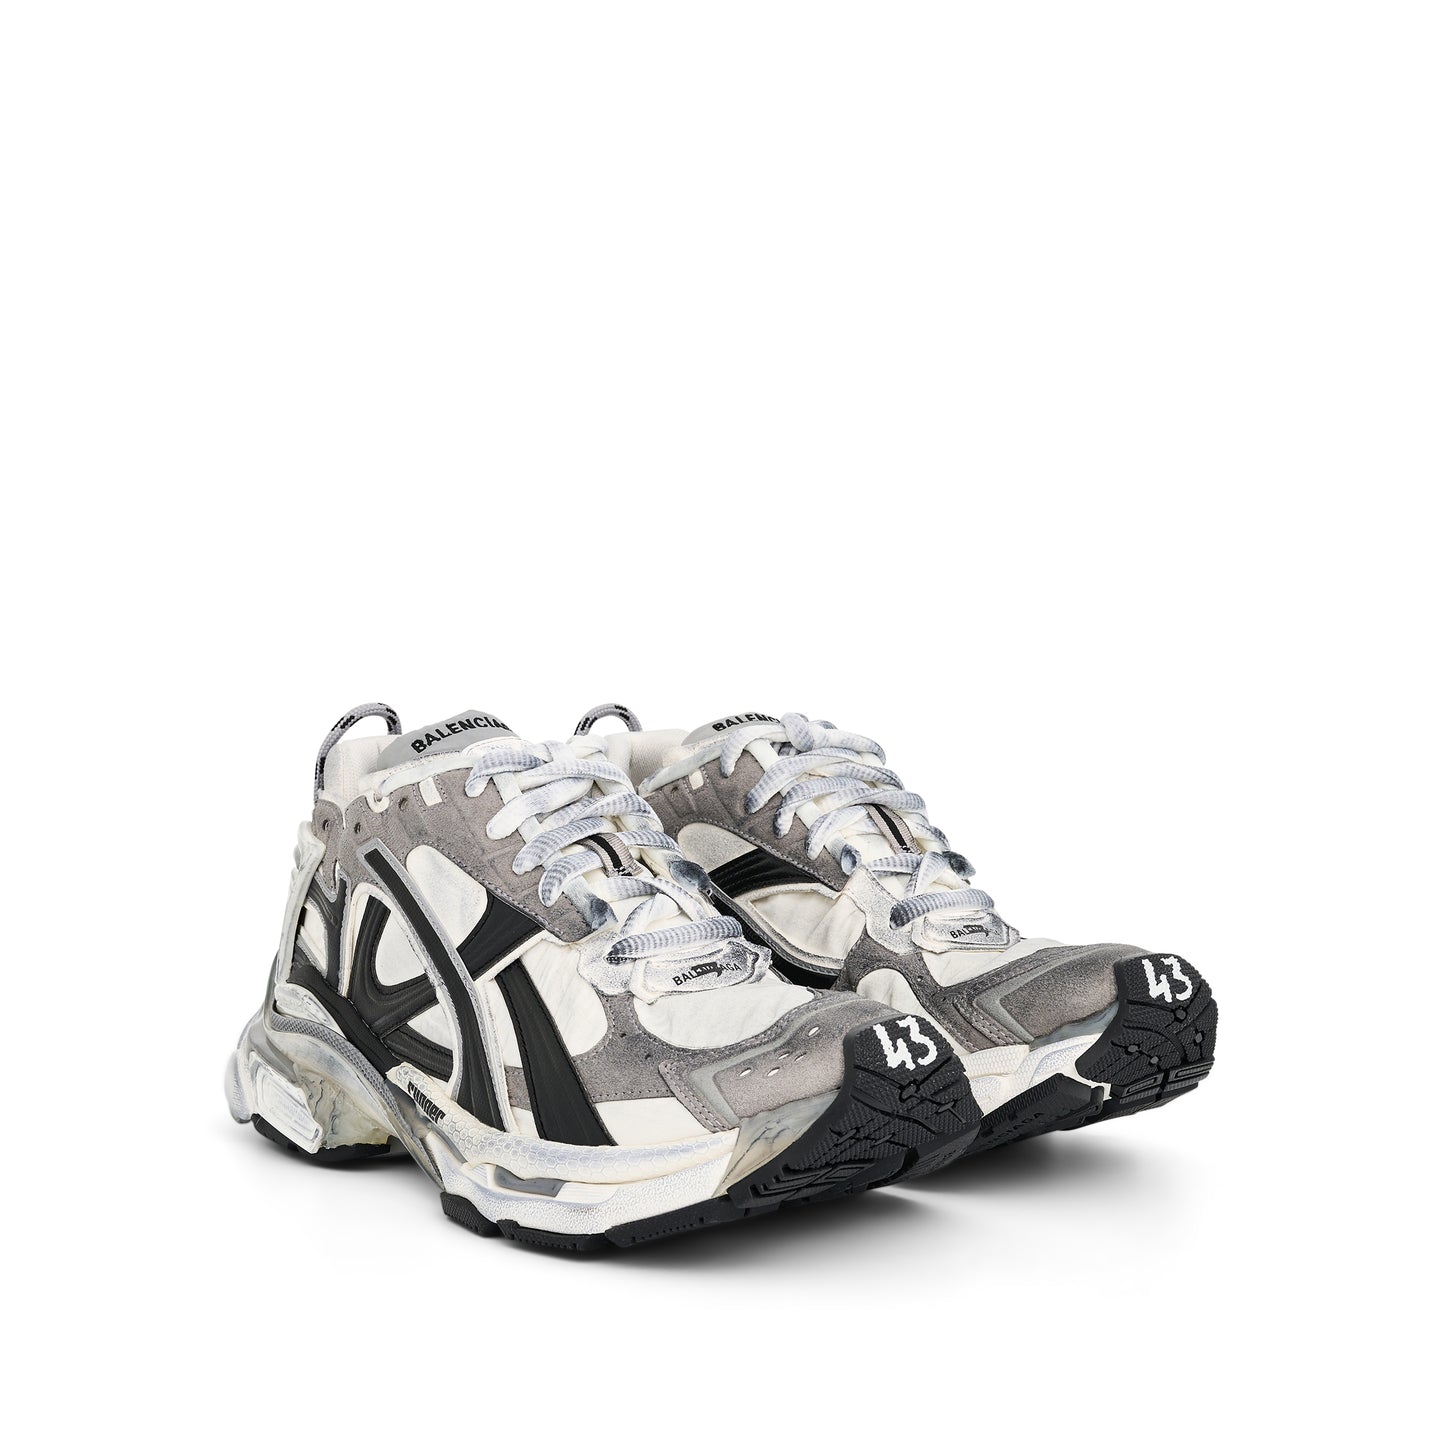 Runner Sneakers in Grey/White/Black